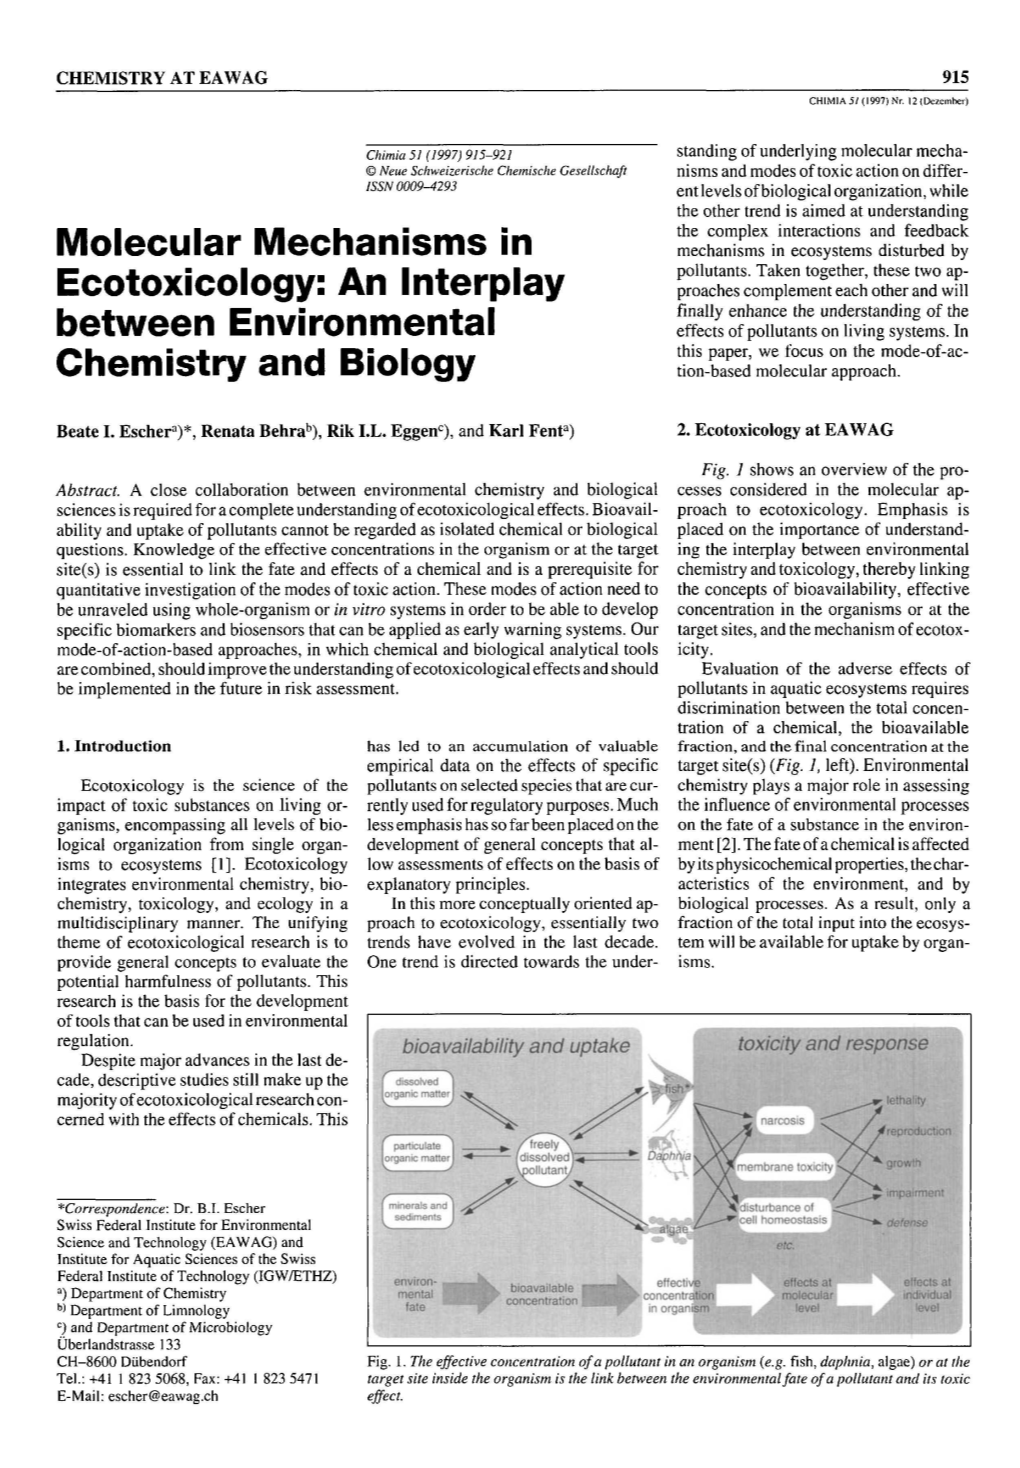 Molecular Mechanisms in Ecotoxicology